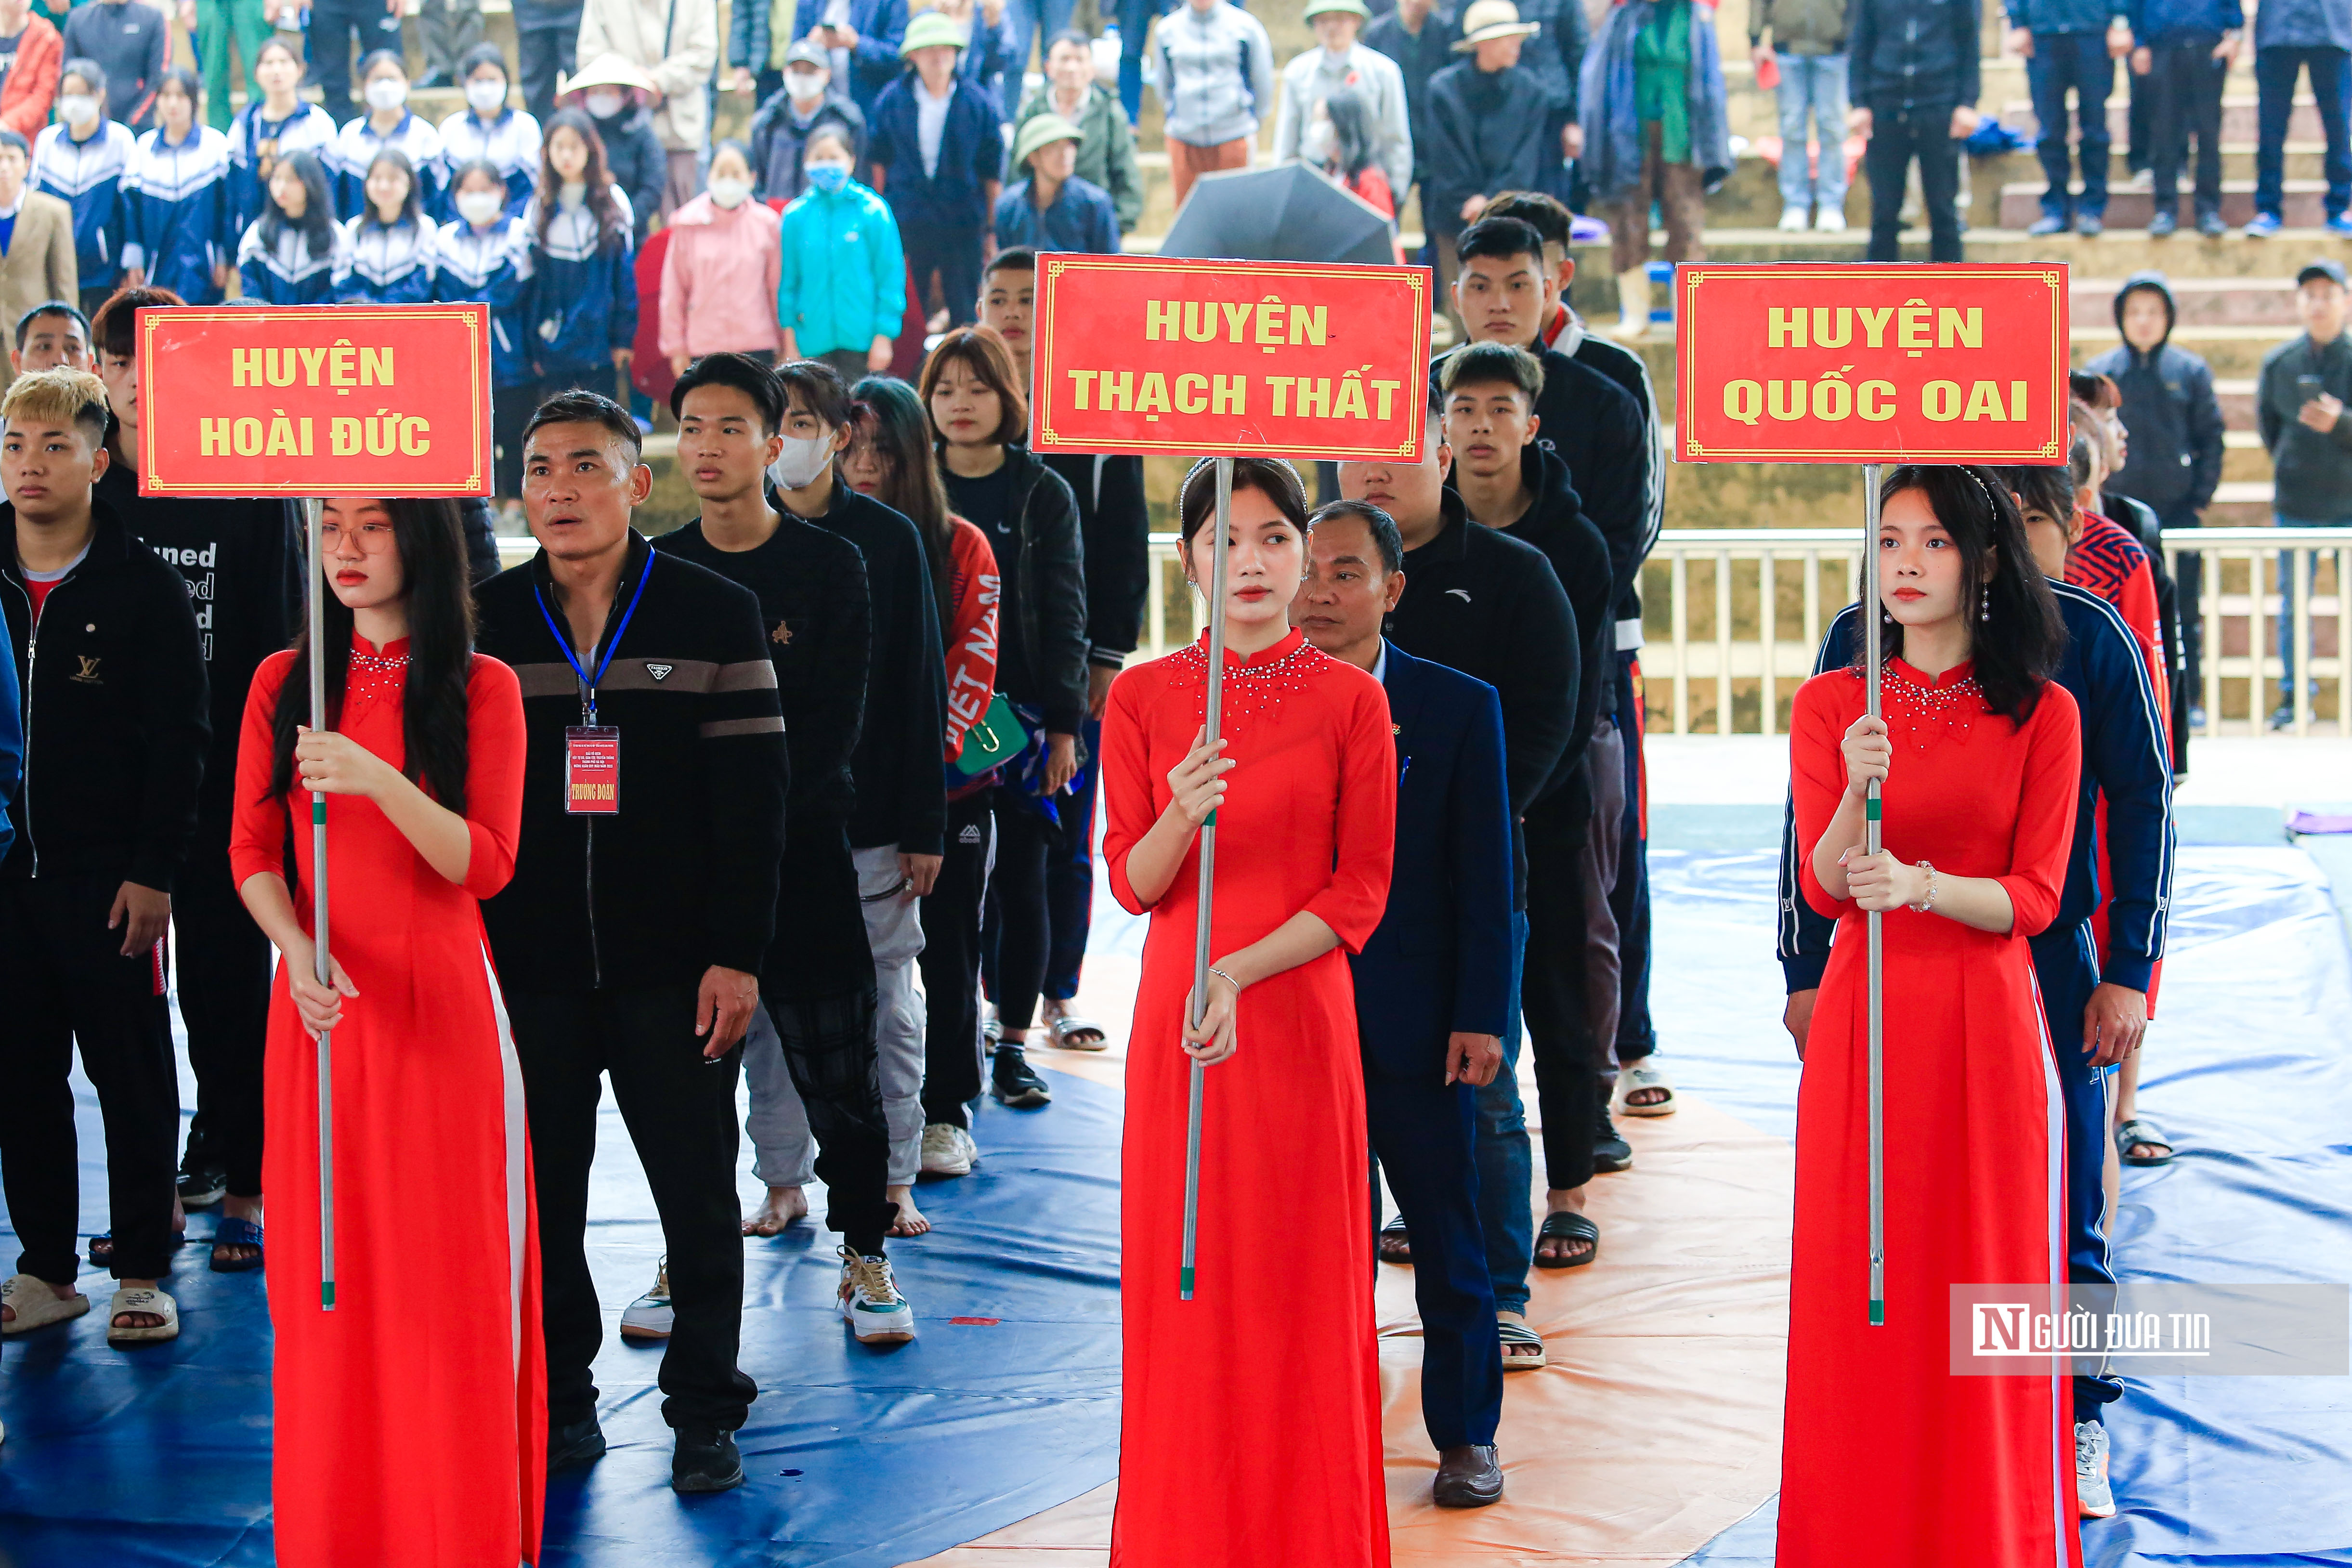 Sự kiện - Người dân đội mưa xem vật tự do, truyền thống ở Hà Nội